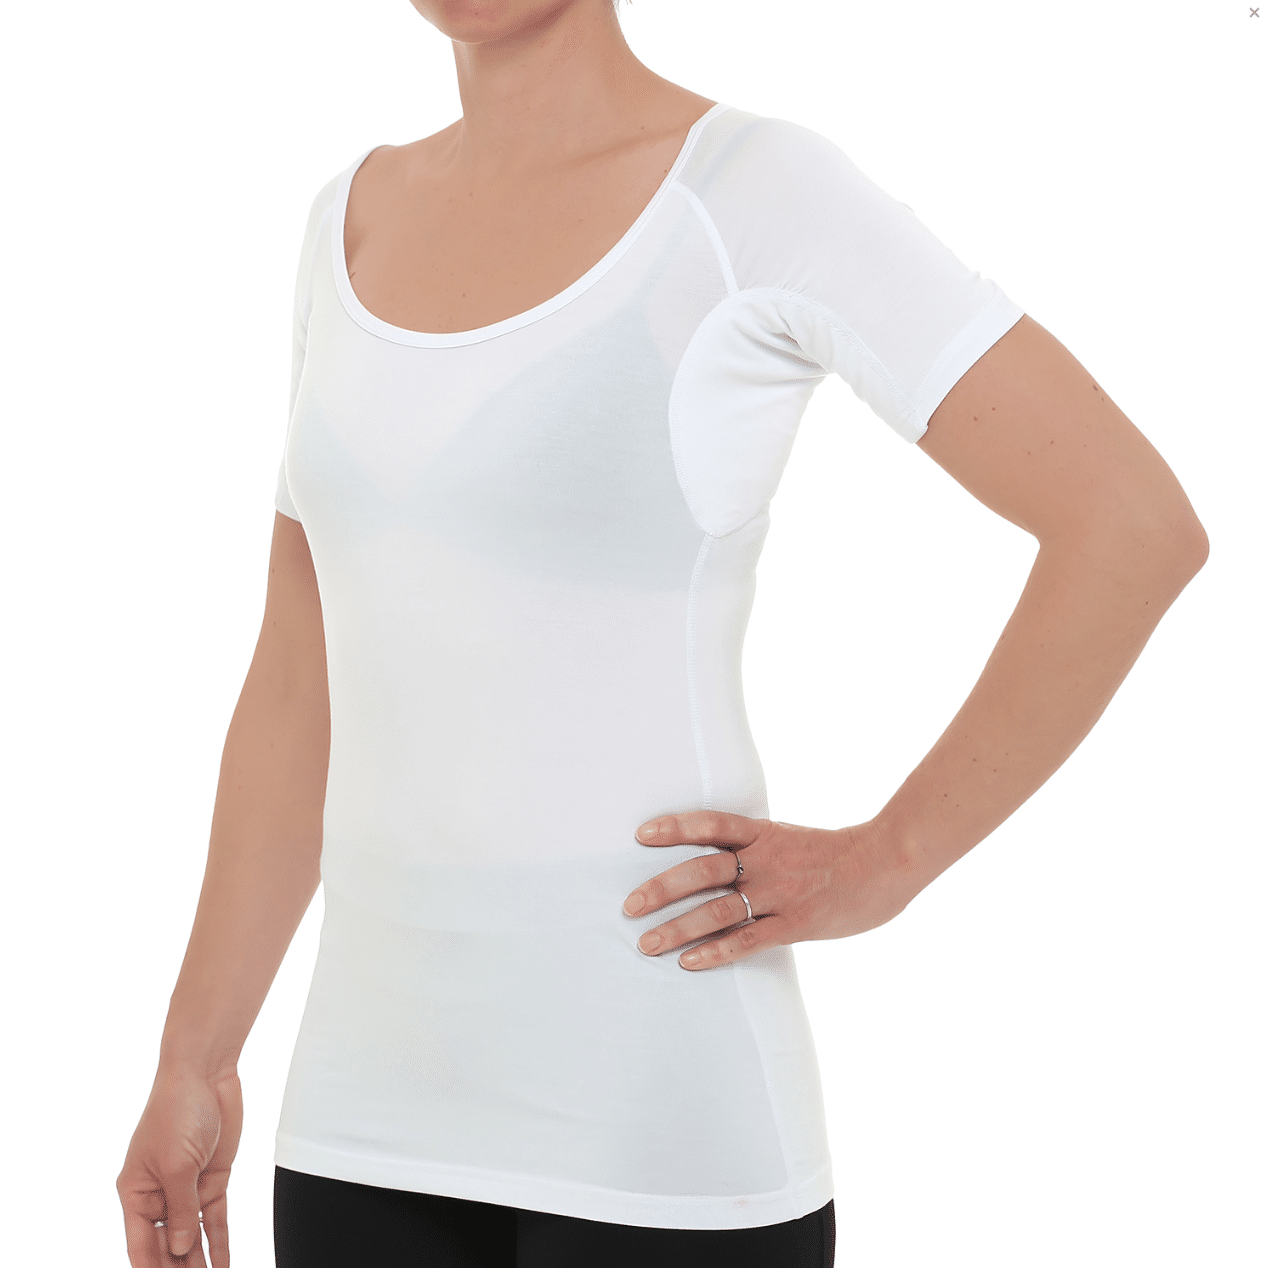 Drywear test anmeldelse erfaring undgå svedpletter på skjorter svedabsorberende undertrøje tshirt t-shirt virker det erfaring med anmeldelse af